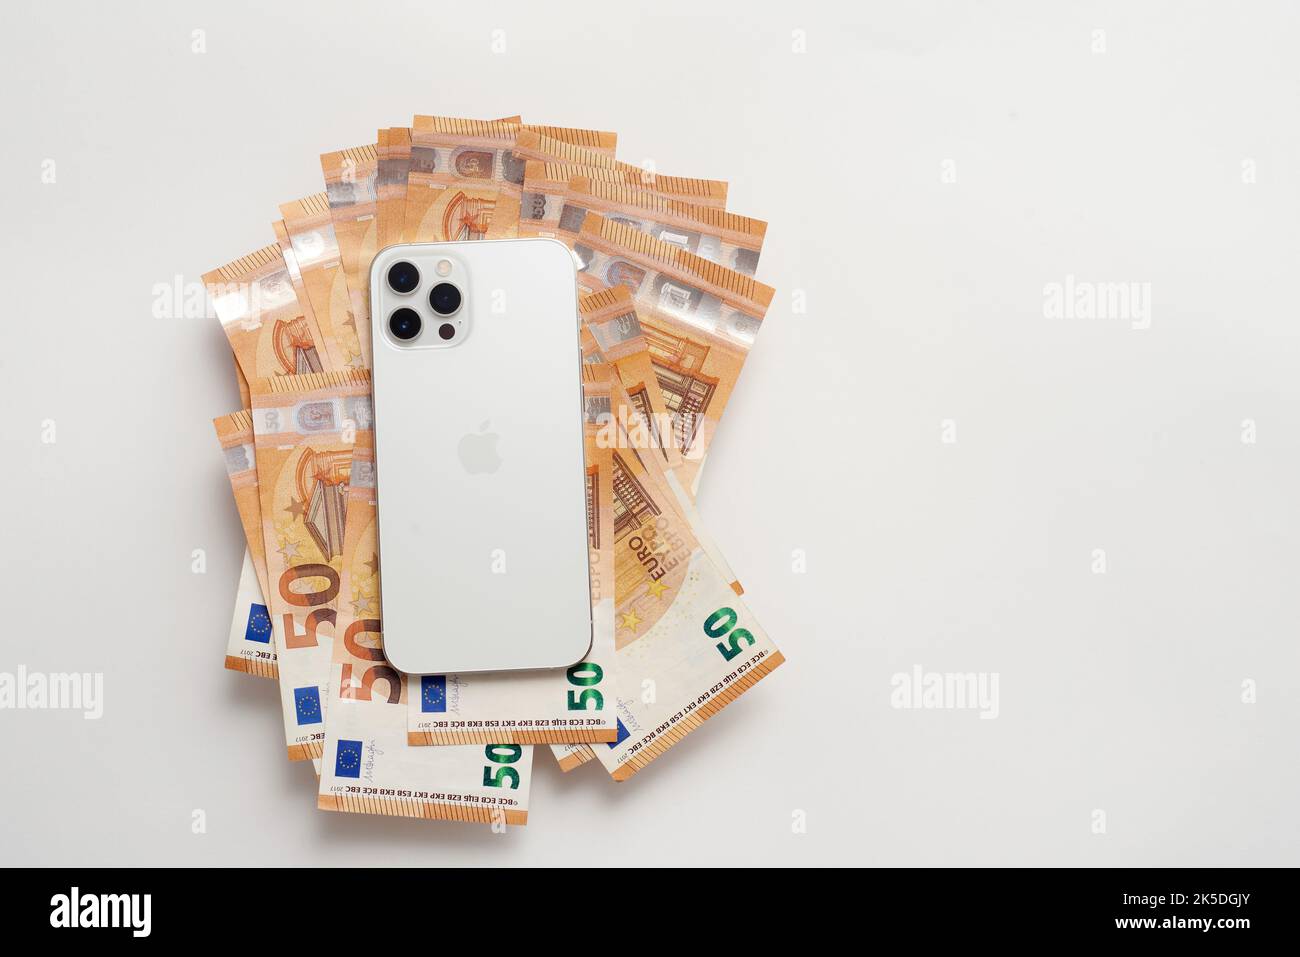 New white iPhone on Euro bills Stock Photo